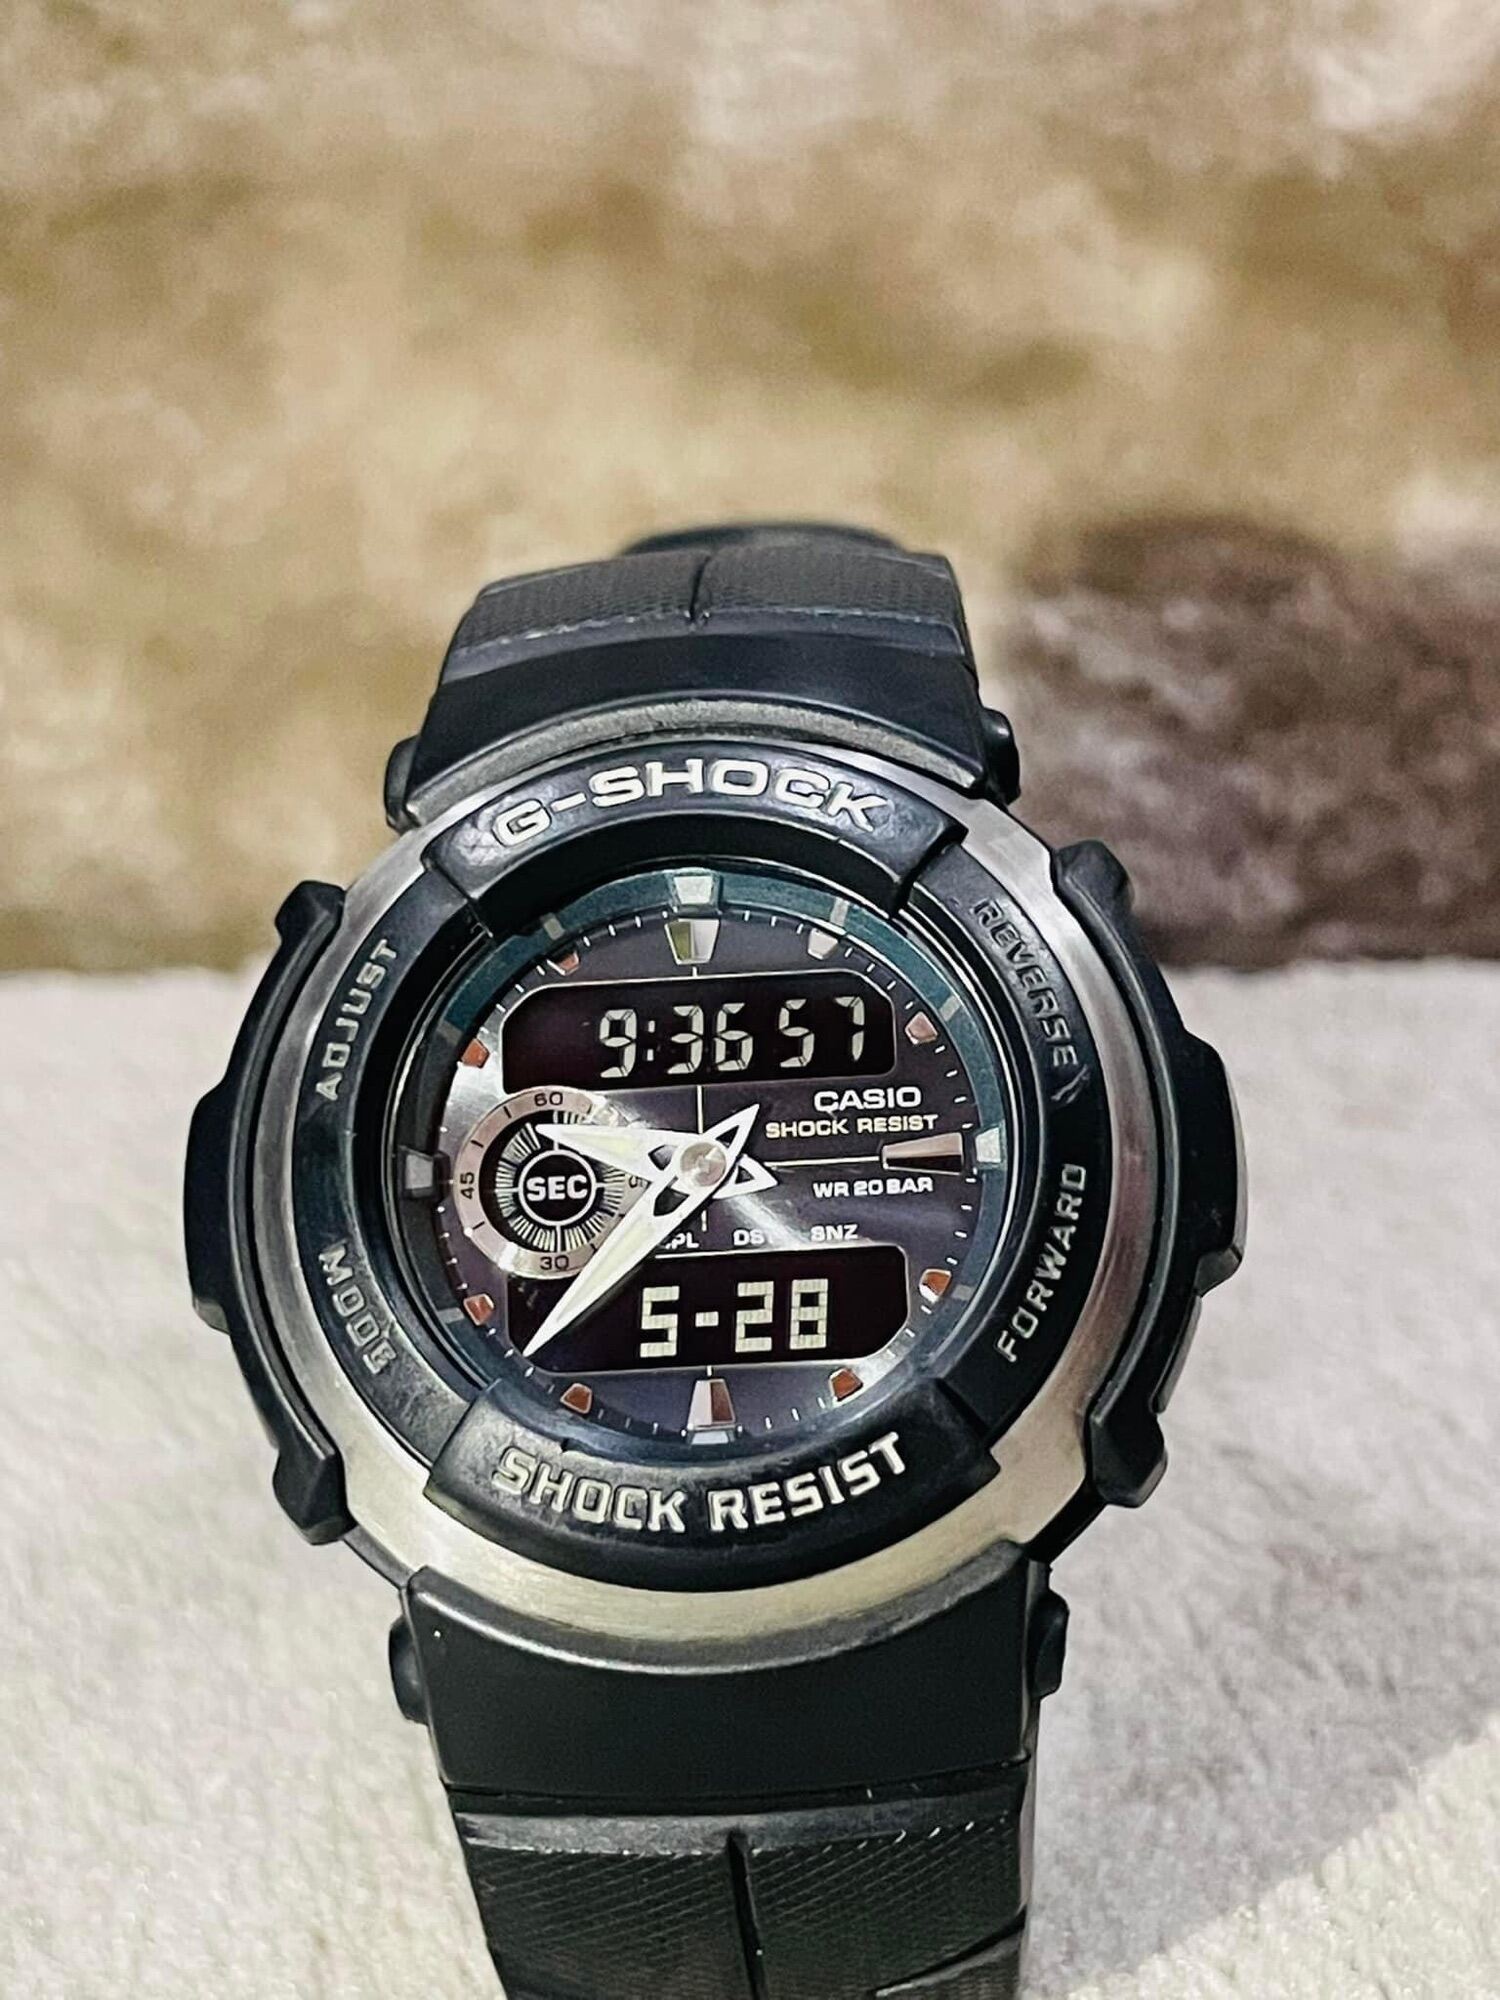 Đồng hồ Casio G Shock G-300, Size 46mm, Chống nước tốt , Độ mới cao 96%